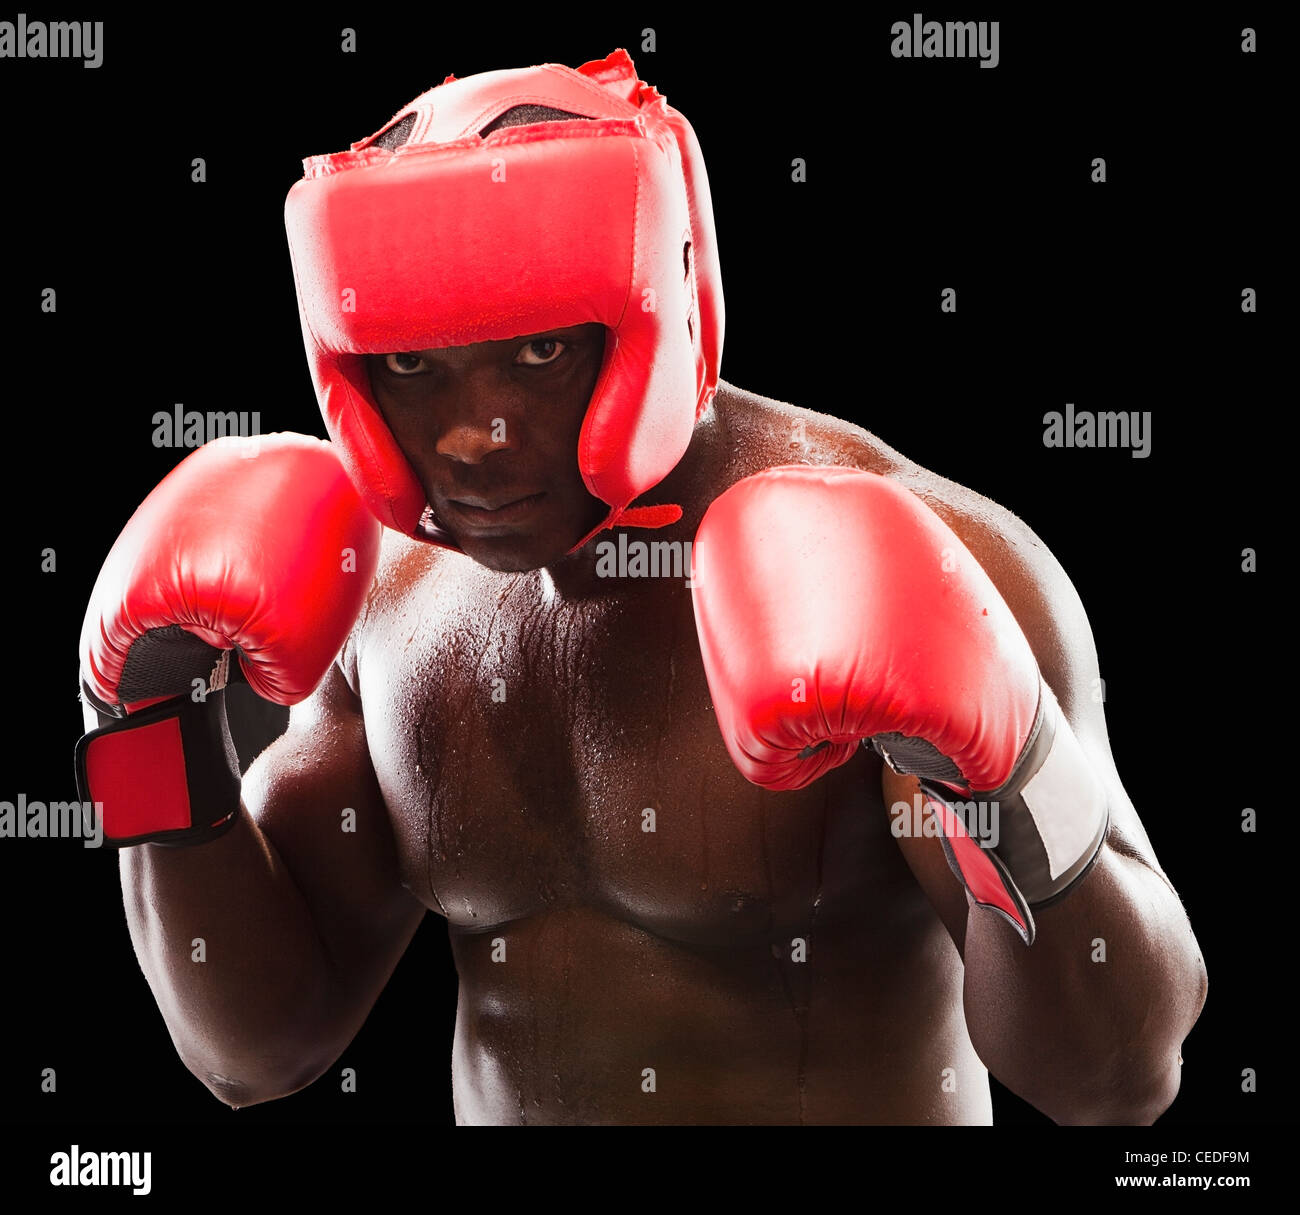 Generosidad semanal Vislumbrar Boxeador afroamericano en indumentaria de protección Fotografía de stock -  Alamy